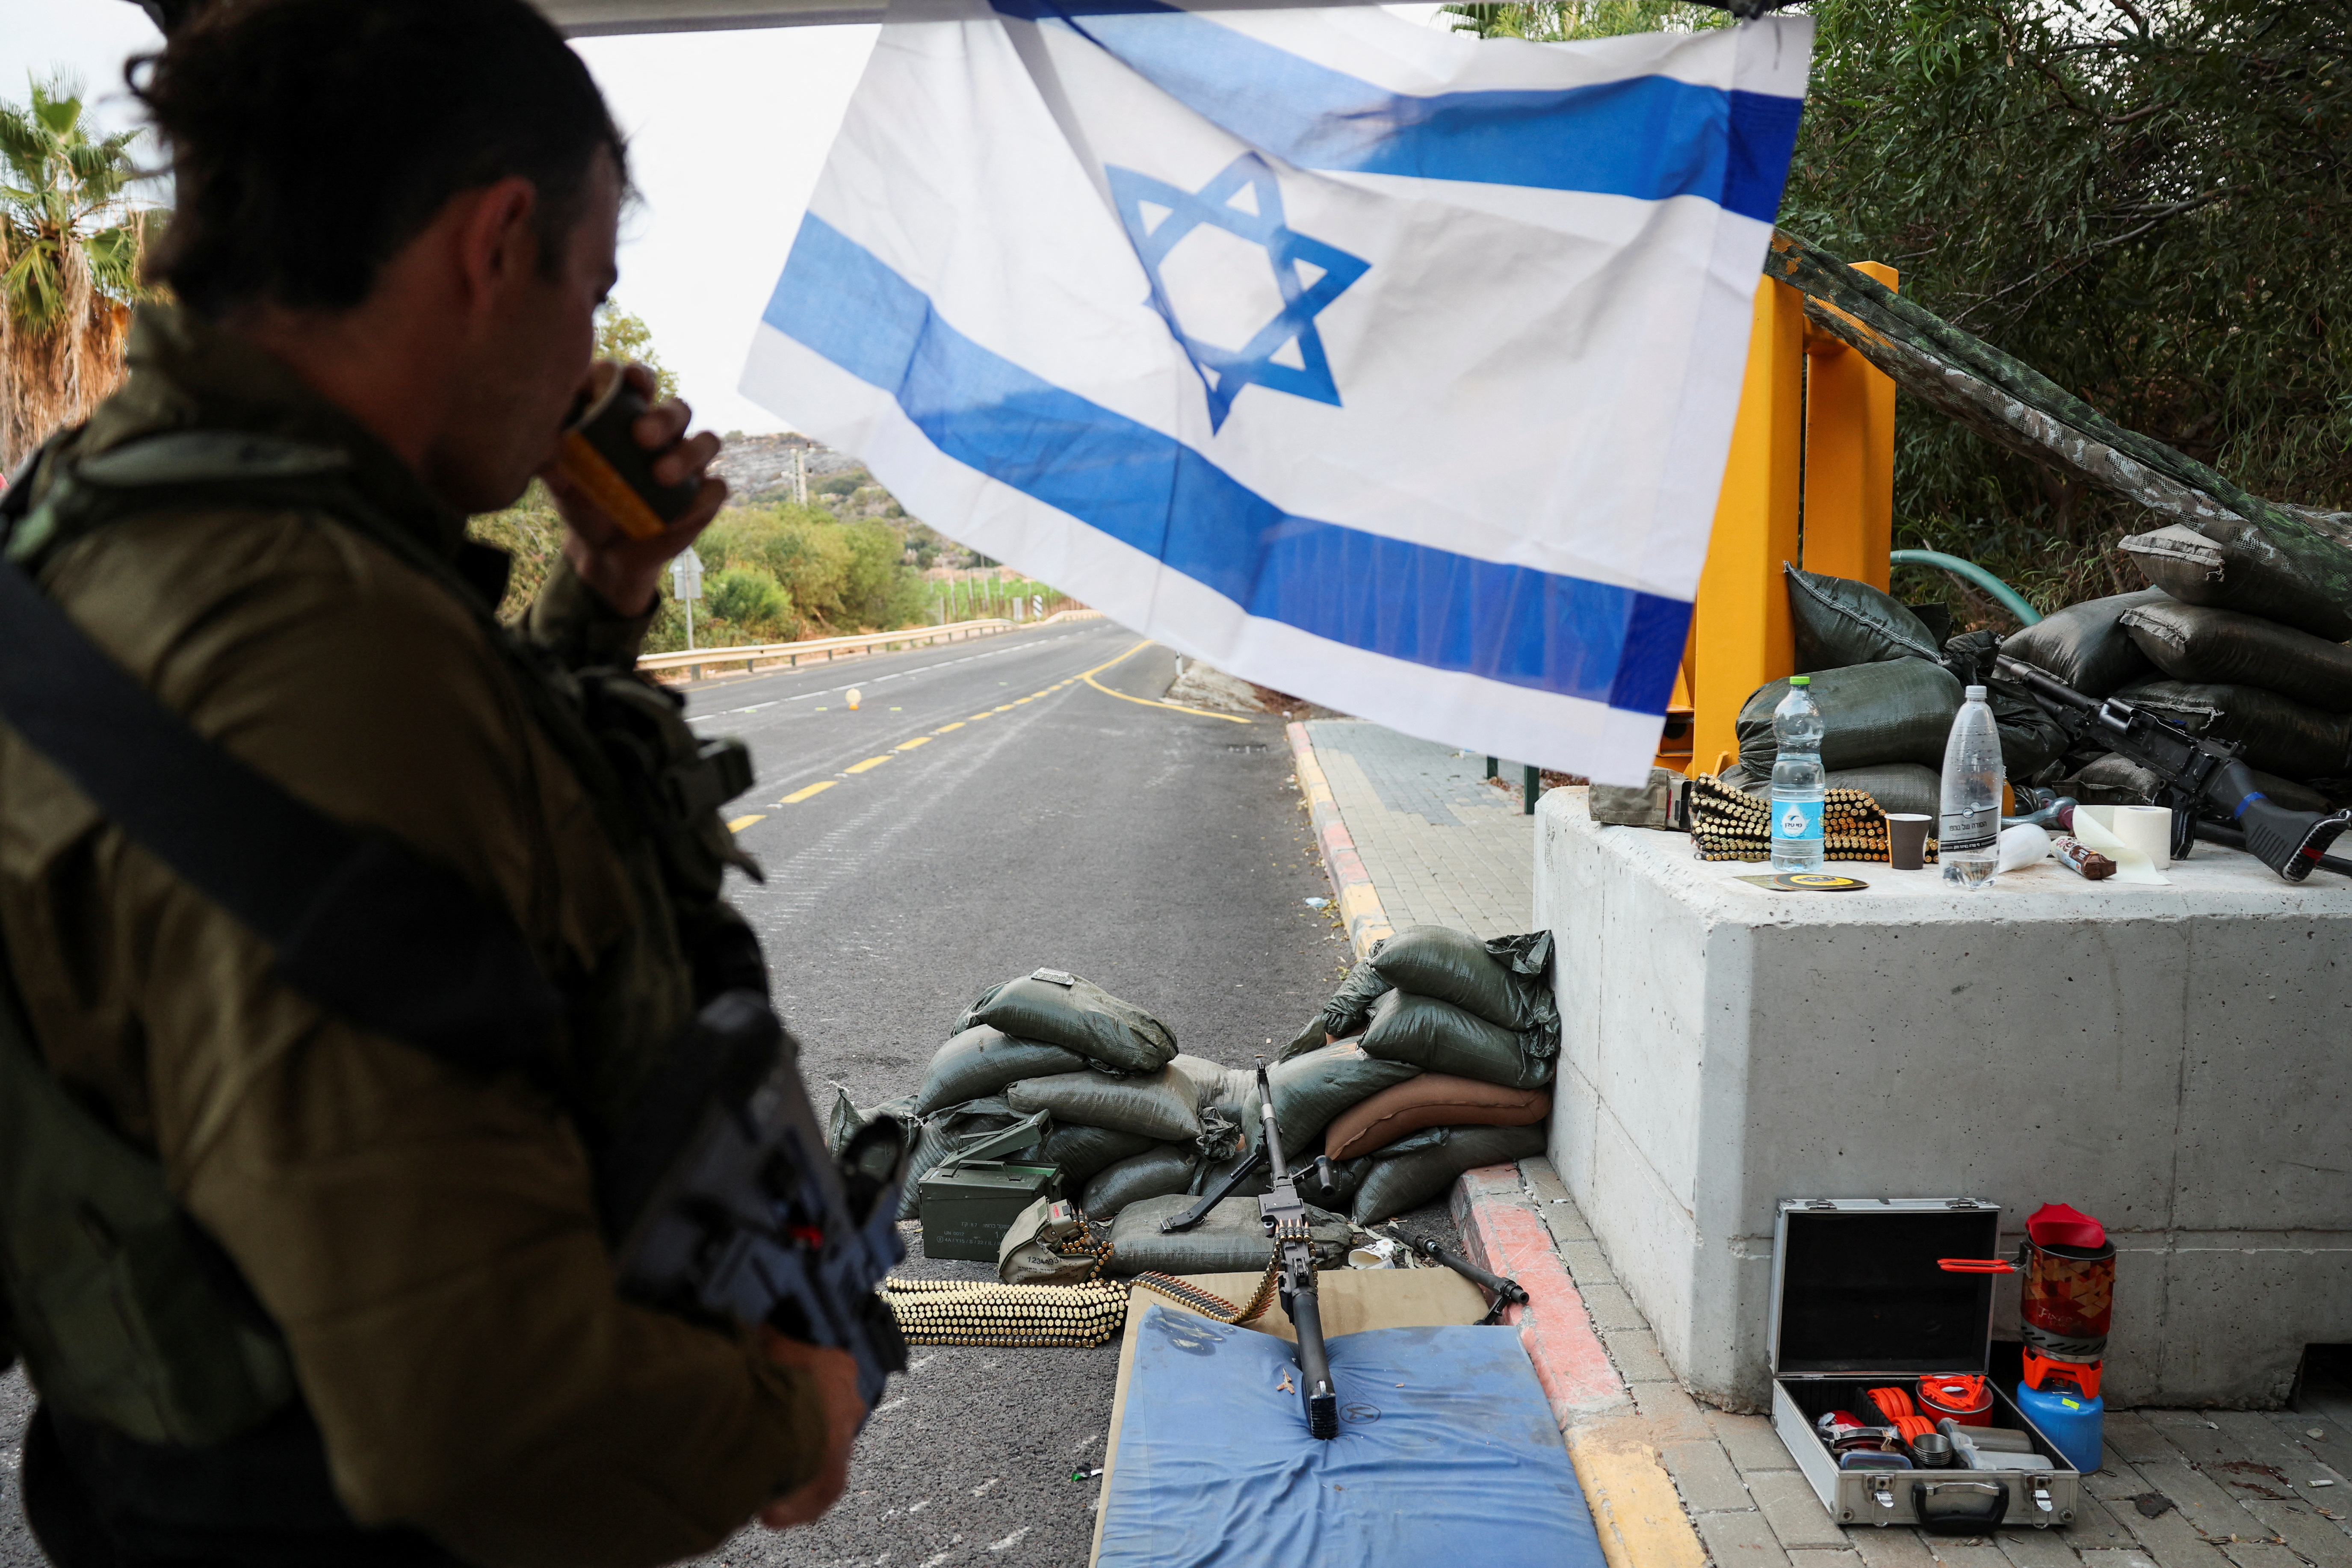 اسرائیلی فوجی شمالی اسرائیل میں لبنان کی سرحد کے قریب ایک چیک پوسٹ پر تعینات ہیں۔